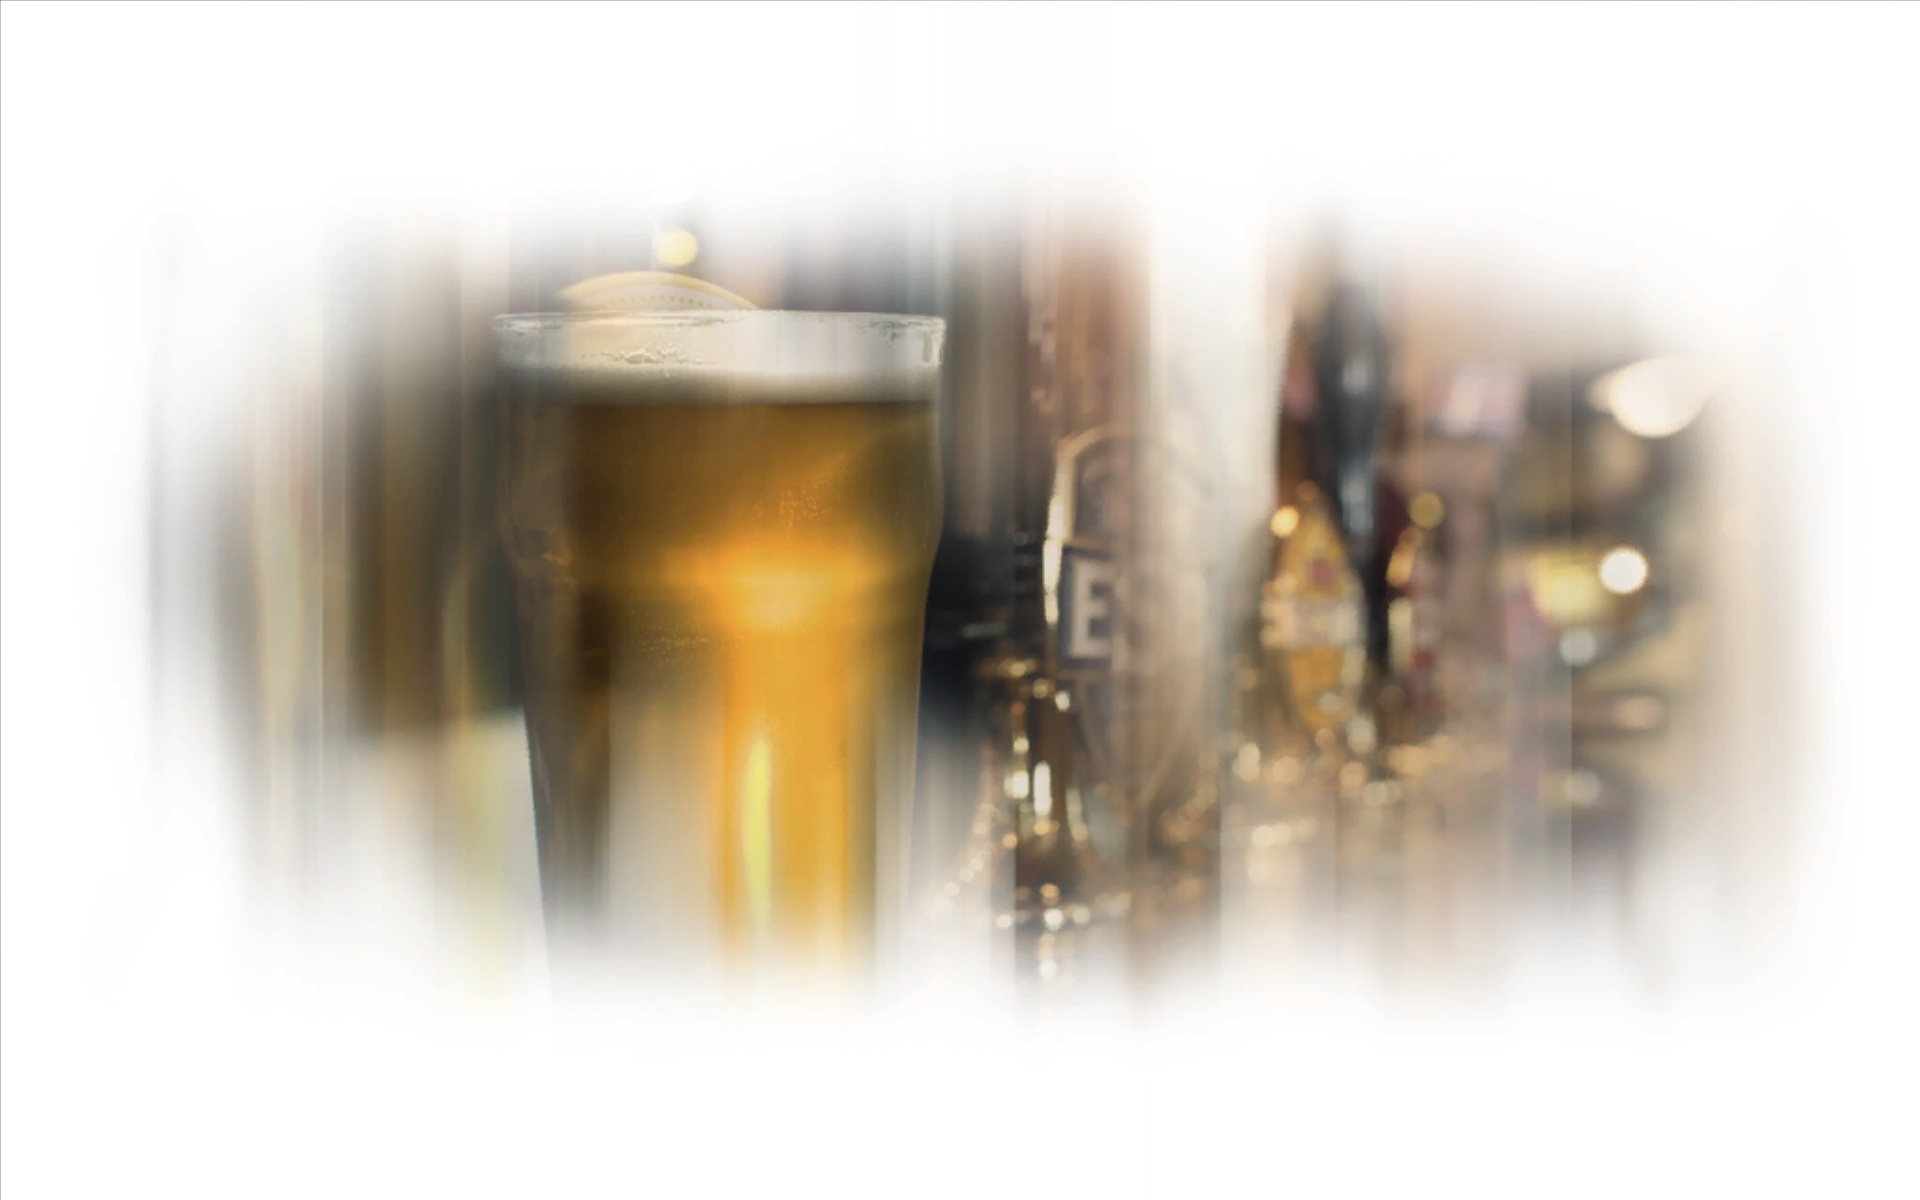 wdr unity app zapfanlage mit bier im glas